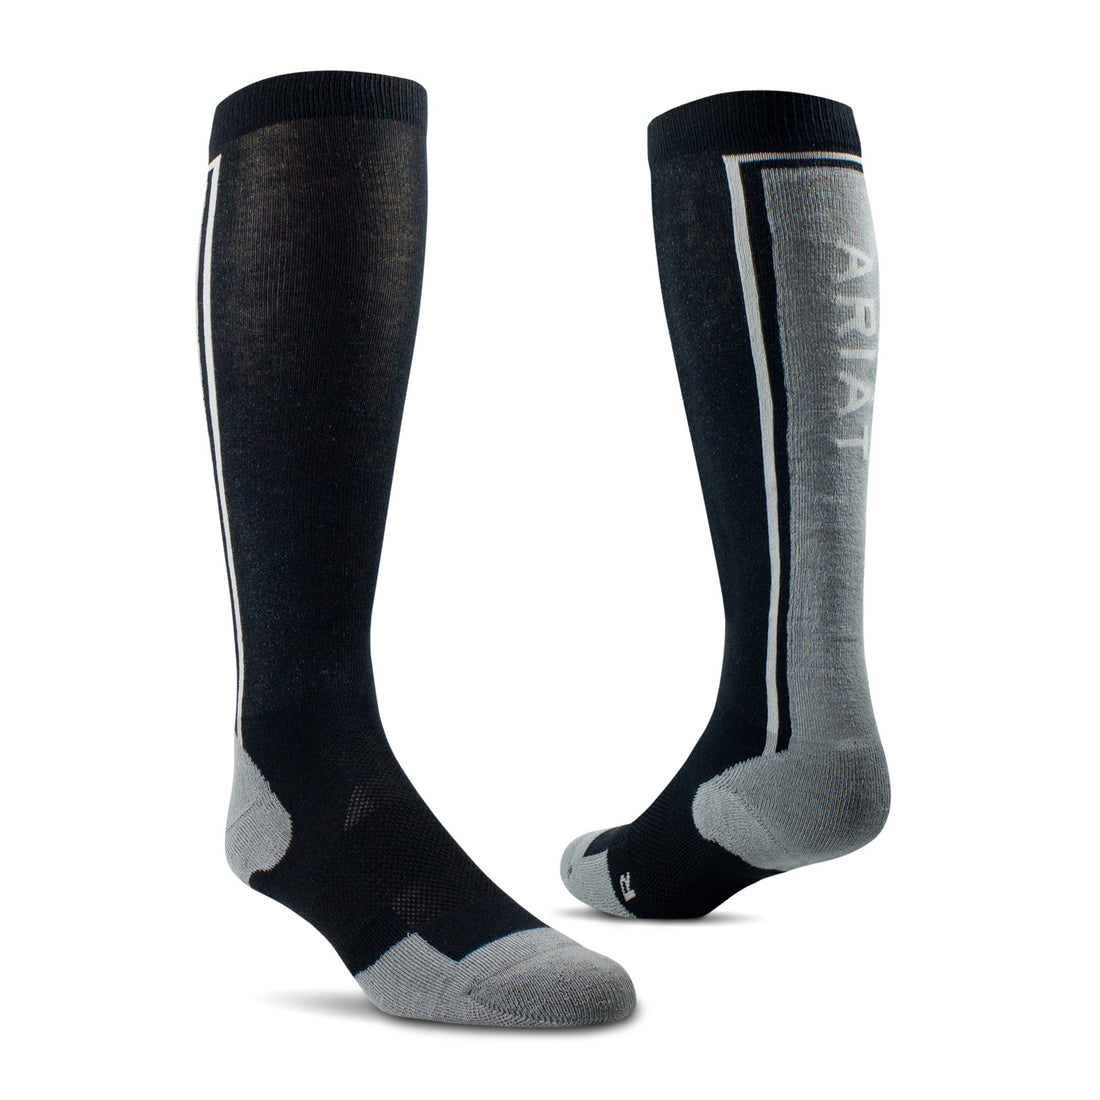 AriatTEK Winter Slimline Performance Socks